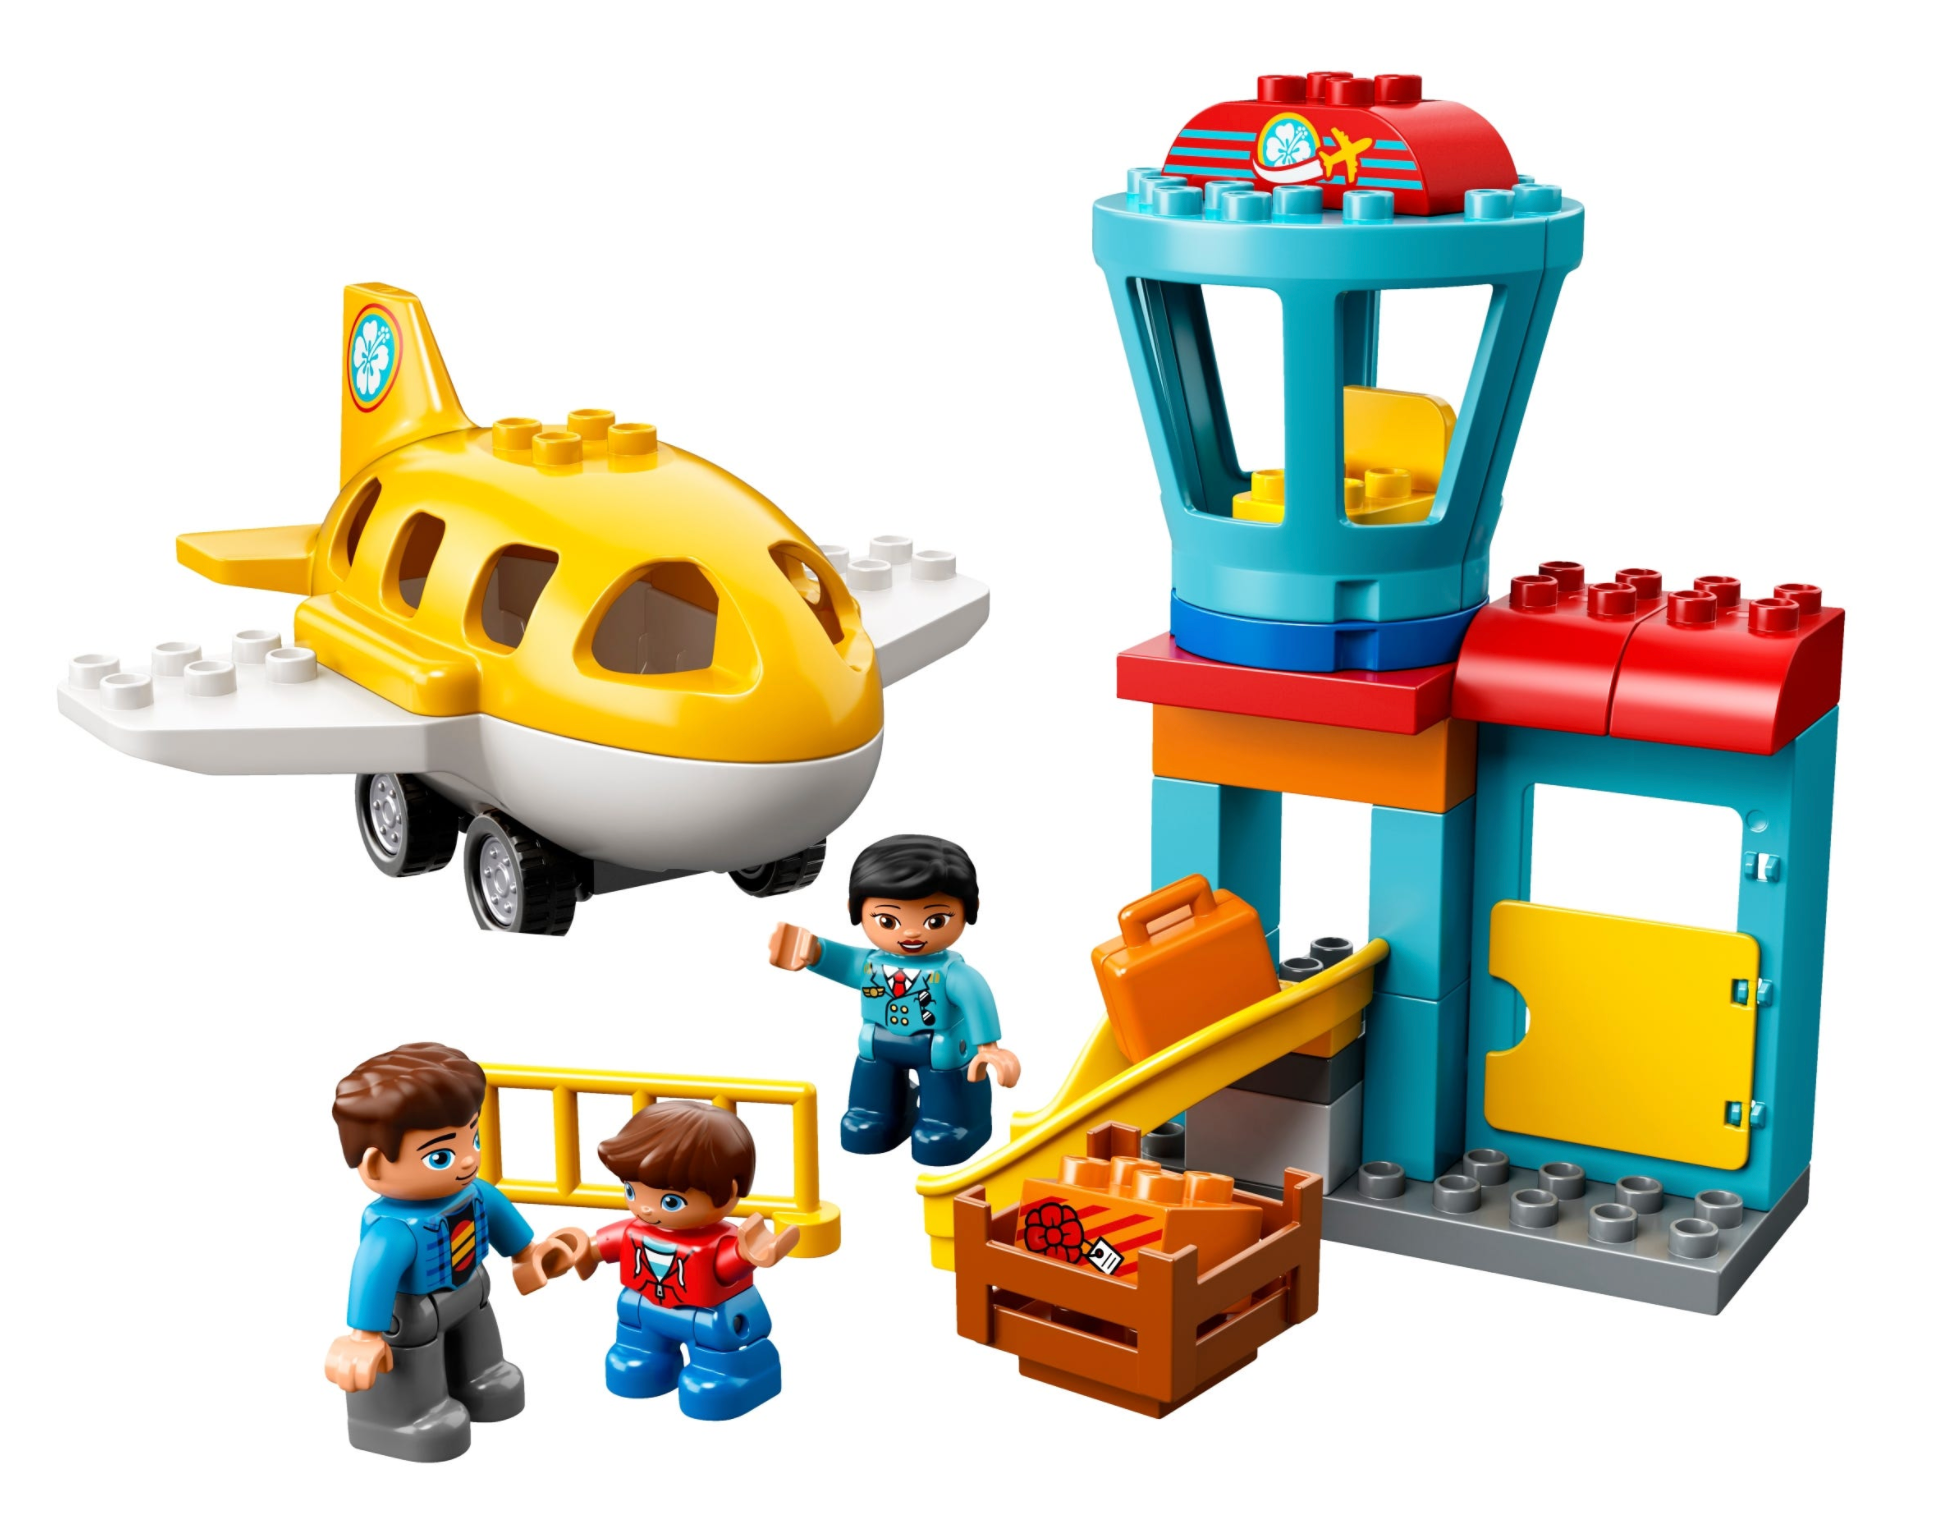 LEGO: DUPLO - Airport